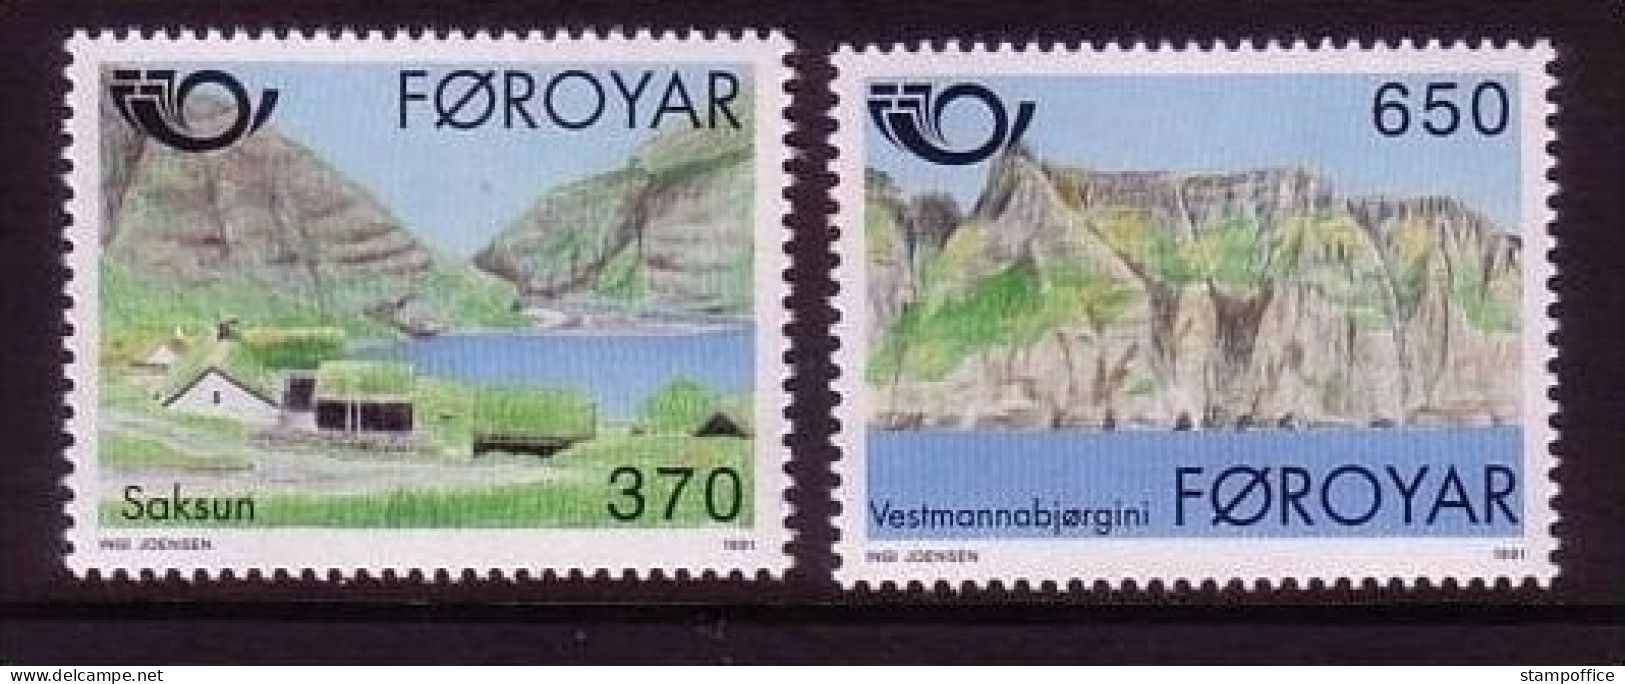 FÄRÖER MI-NR. 219-220 POSTFRISCH(MINT) NORDEN 1991 - TOURISMUS - Färöer Inseln